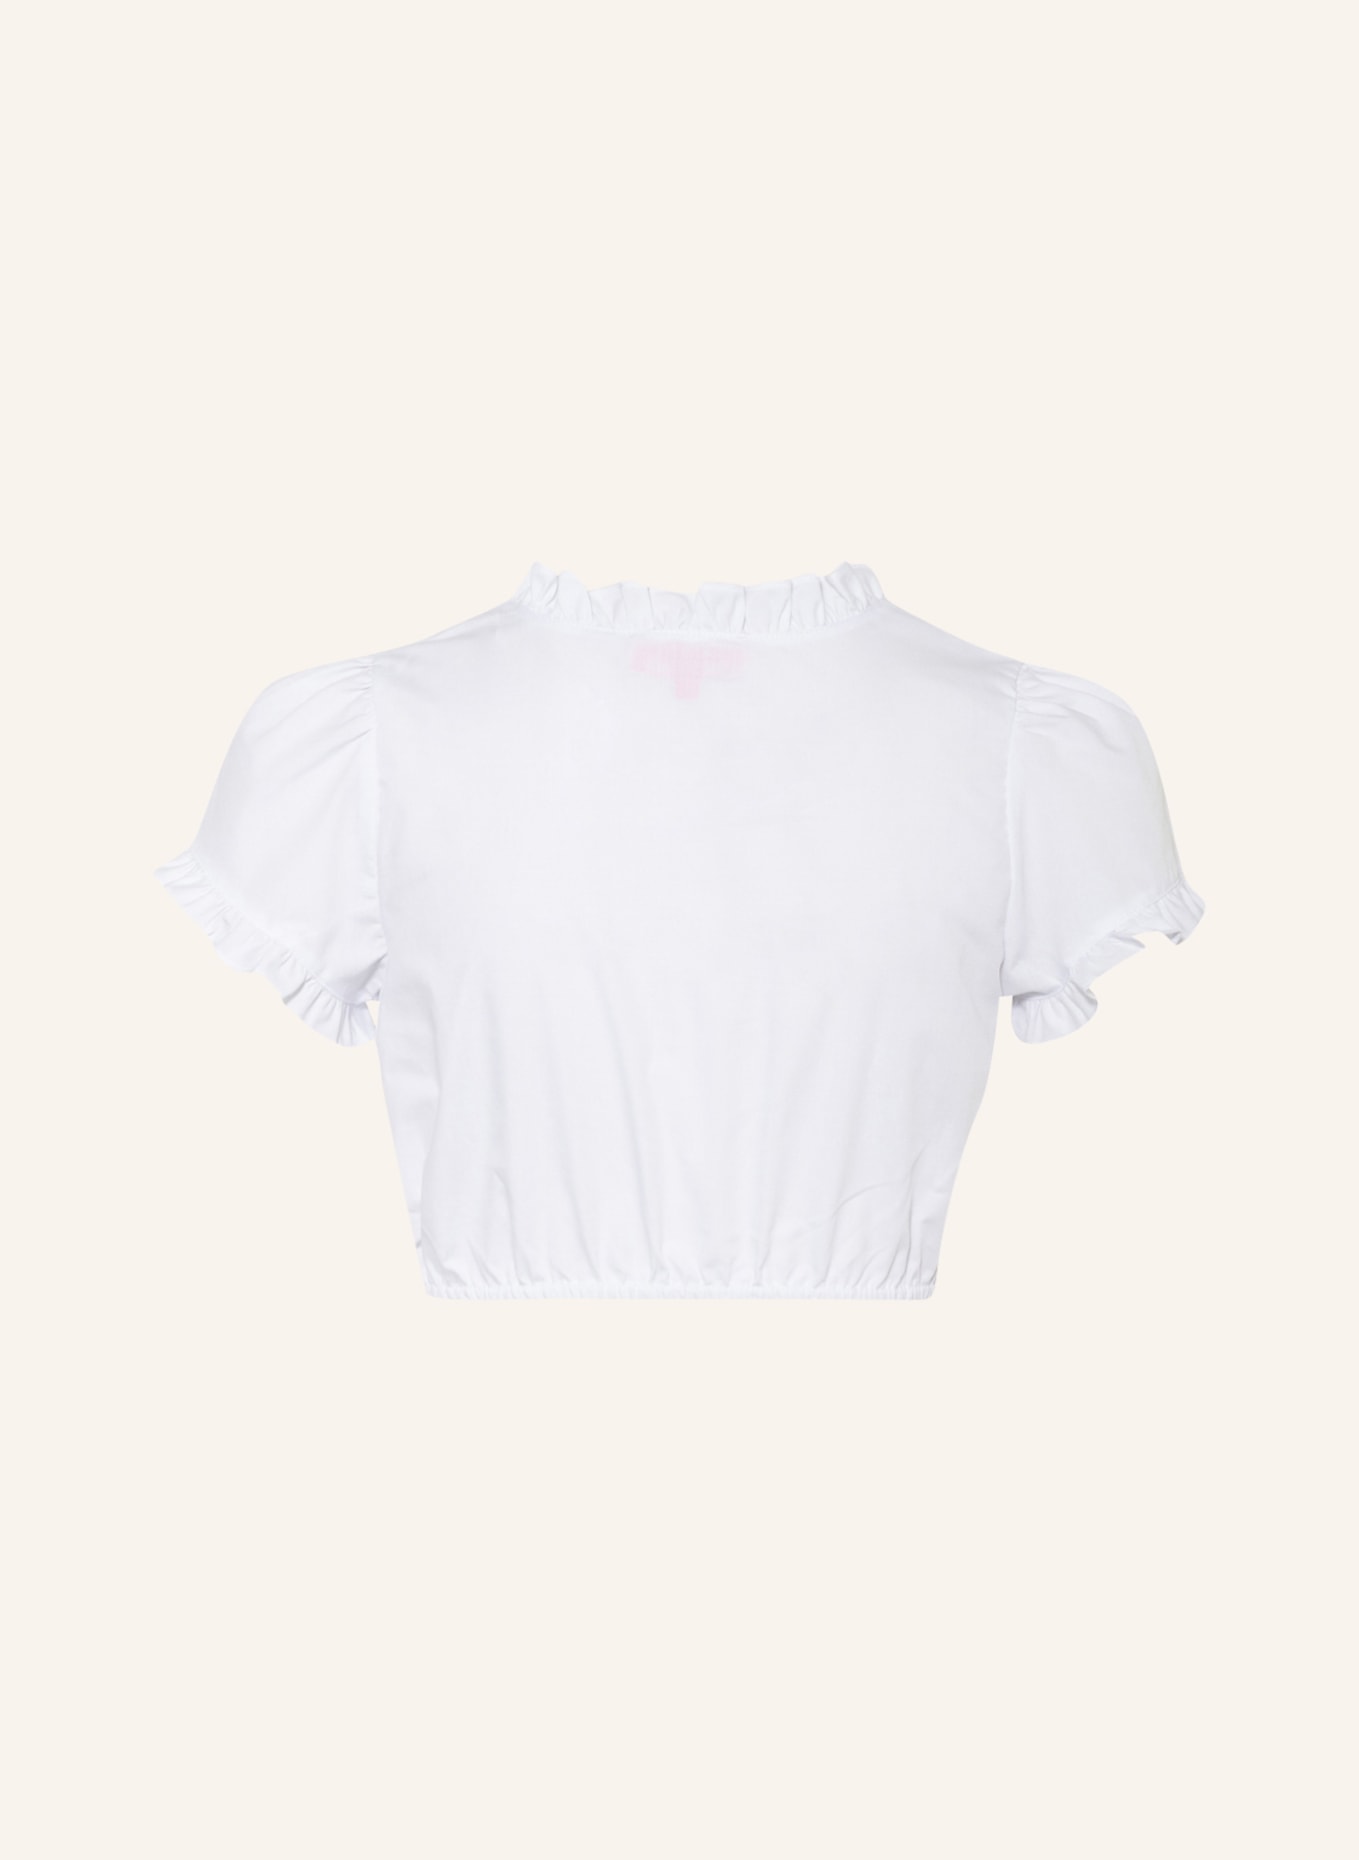 KRÜGER Dirndl blouse SOBER, Color: WHITE (Image 2)